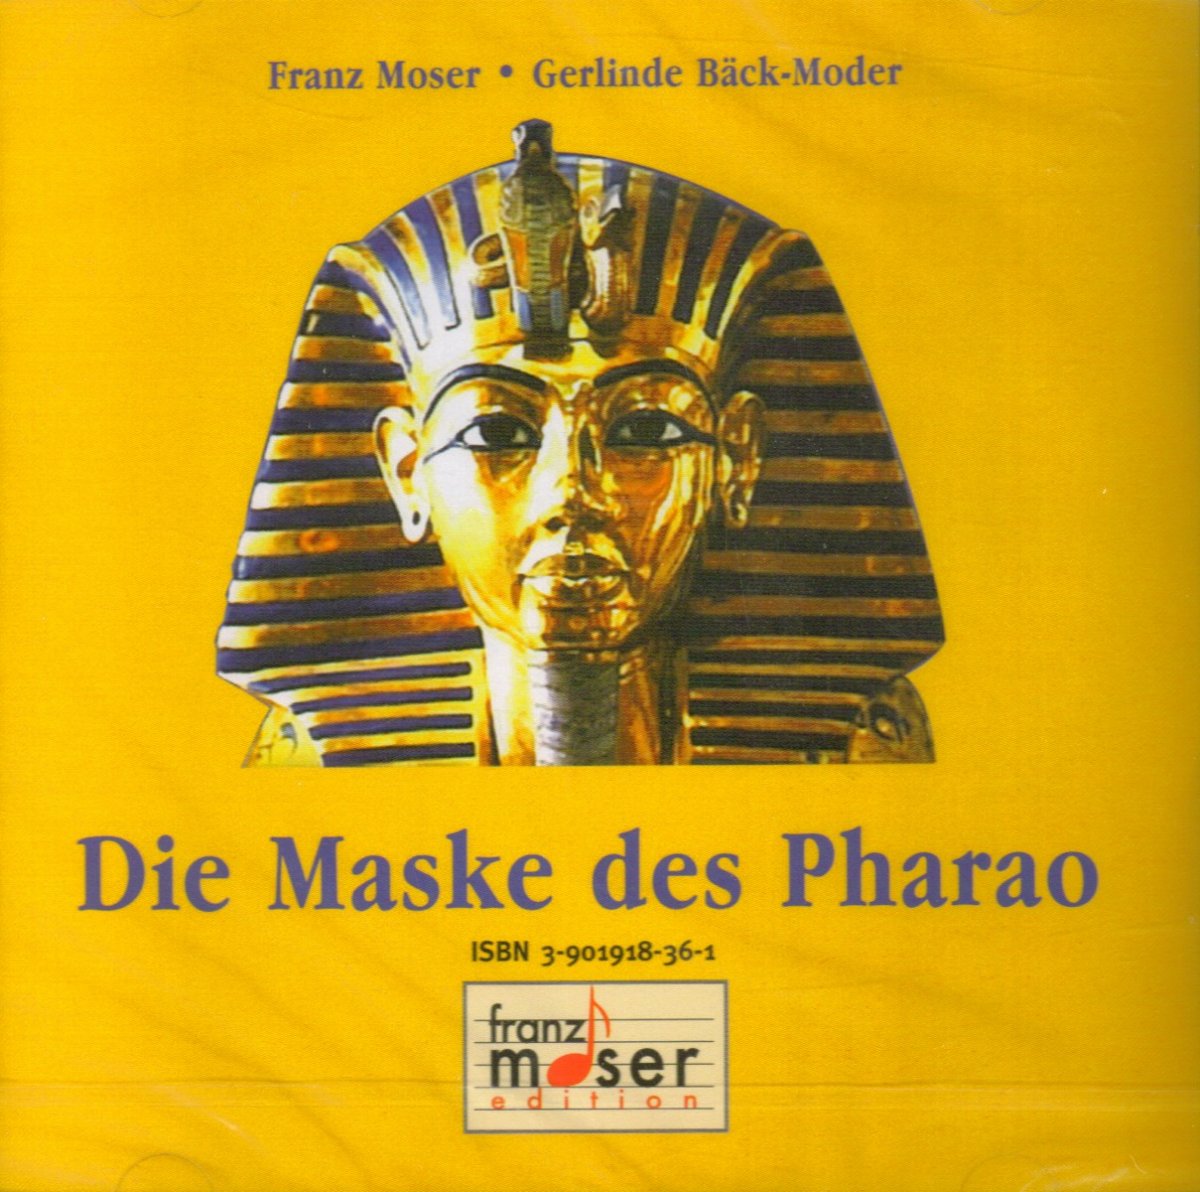 Maske des Pharao, Die - klik hier